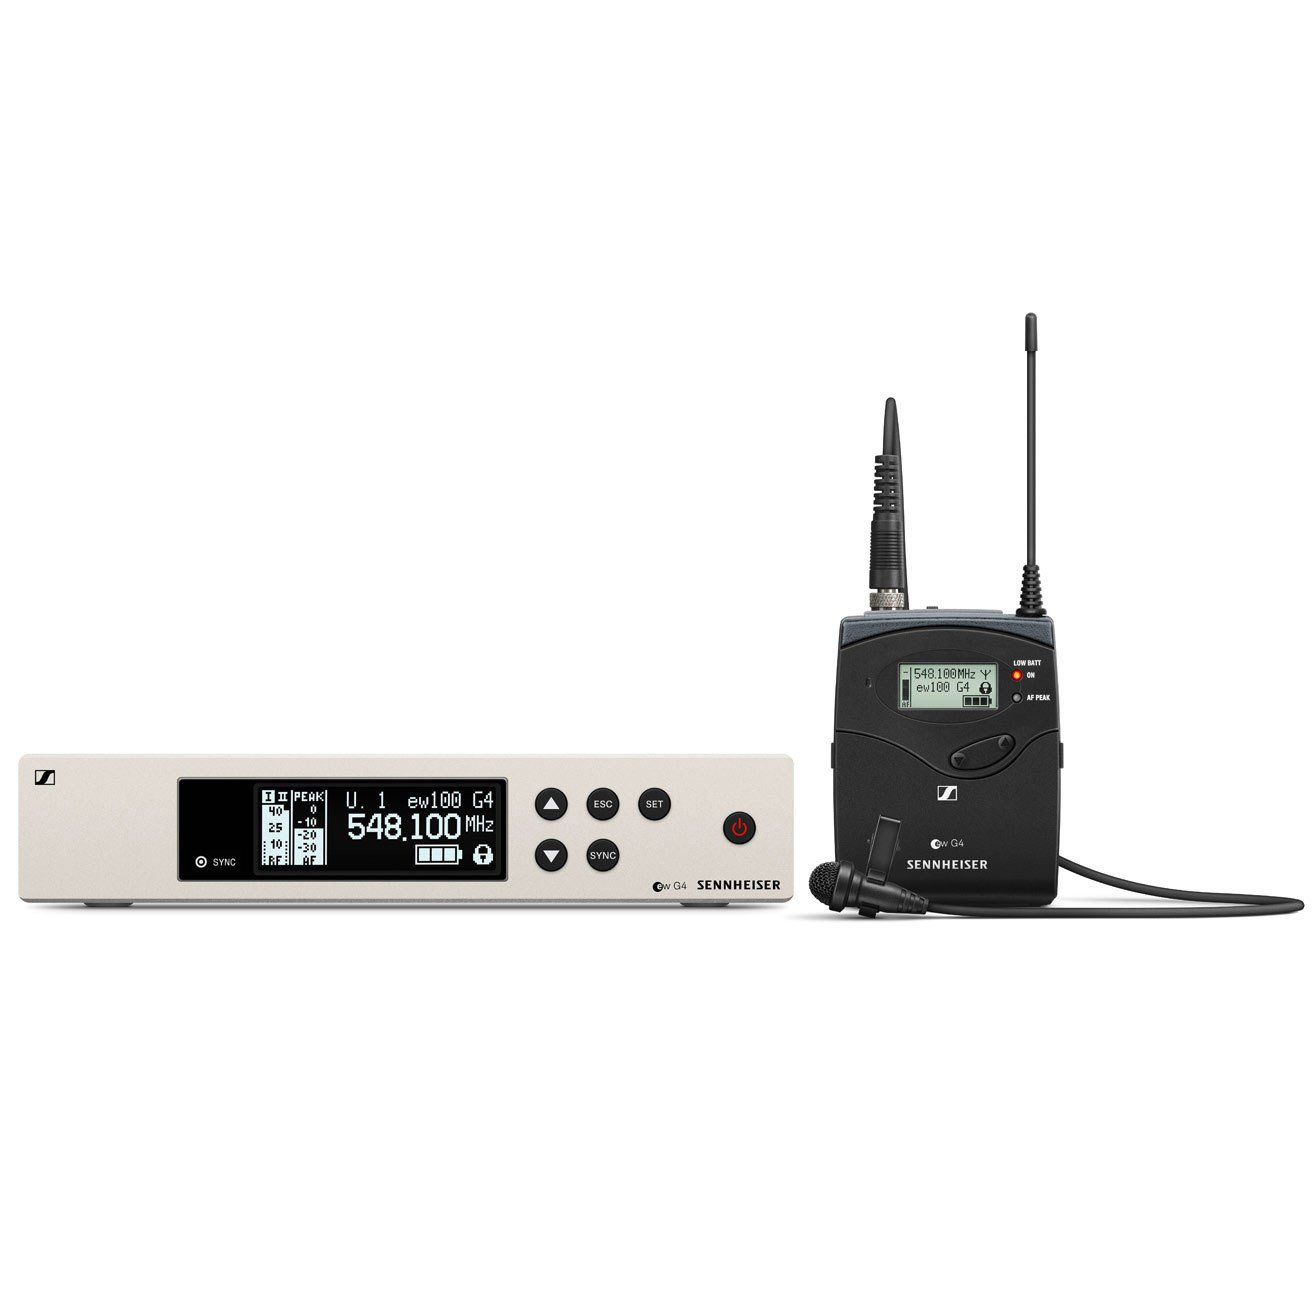 ‌Sennheiser ew 100 G4-ME4-1G8 - uniwersalny system bezprzewodowy dla prezenterów i moderatorów, pasmo 1G8: 1785 - 1800 MHz